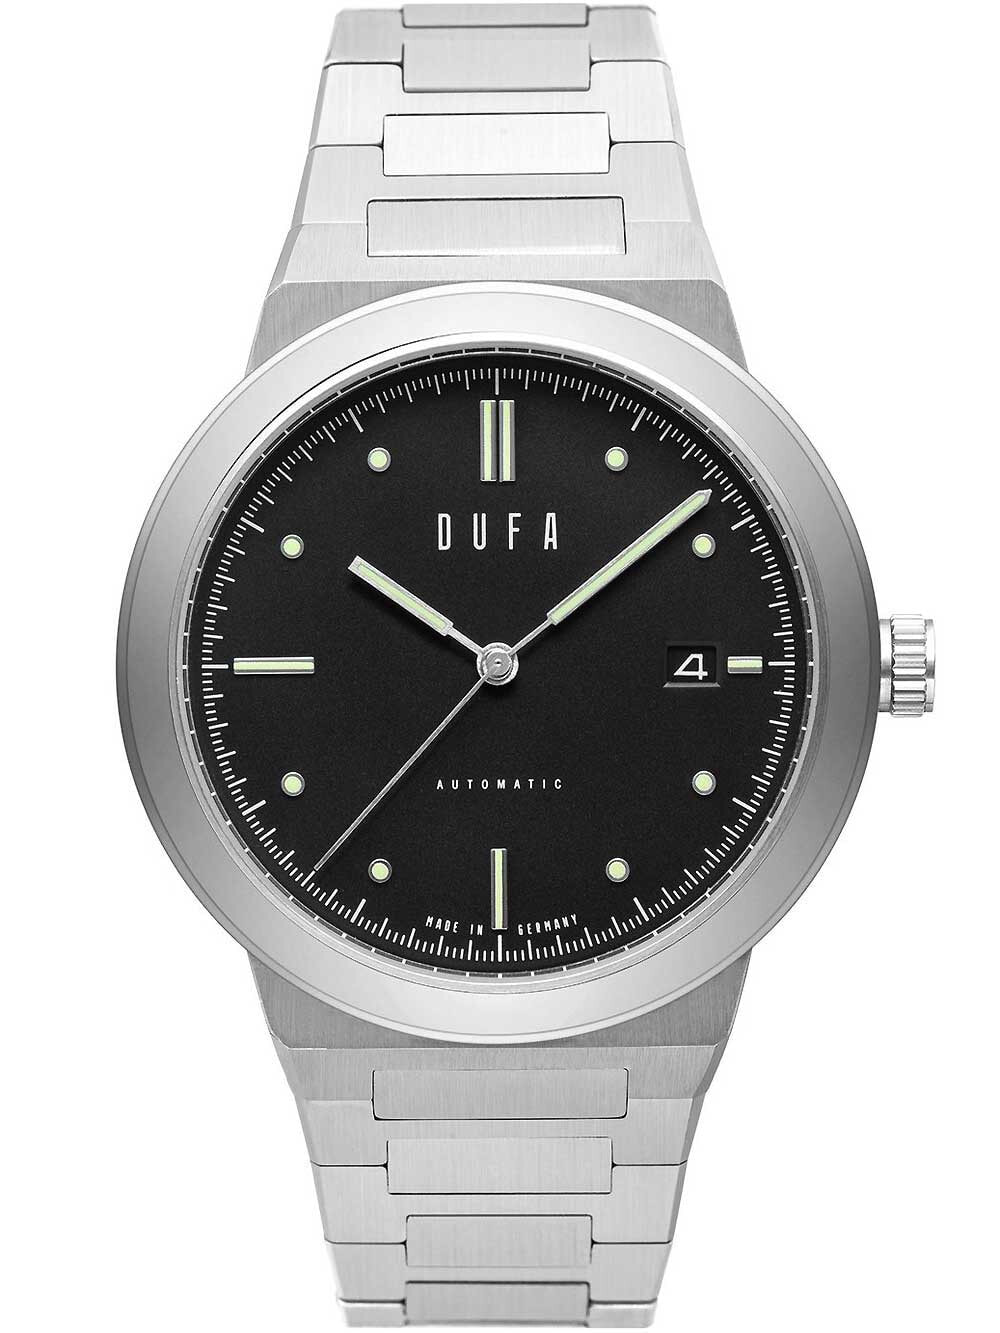 Мужские наручные часы с серебряным браслетом DuFa DF-9033-22 mens automatic 40 mm 5ATM